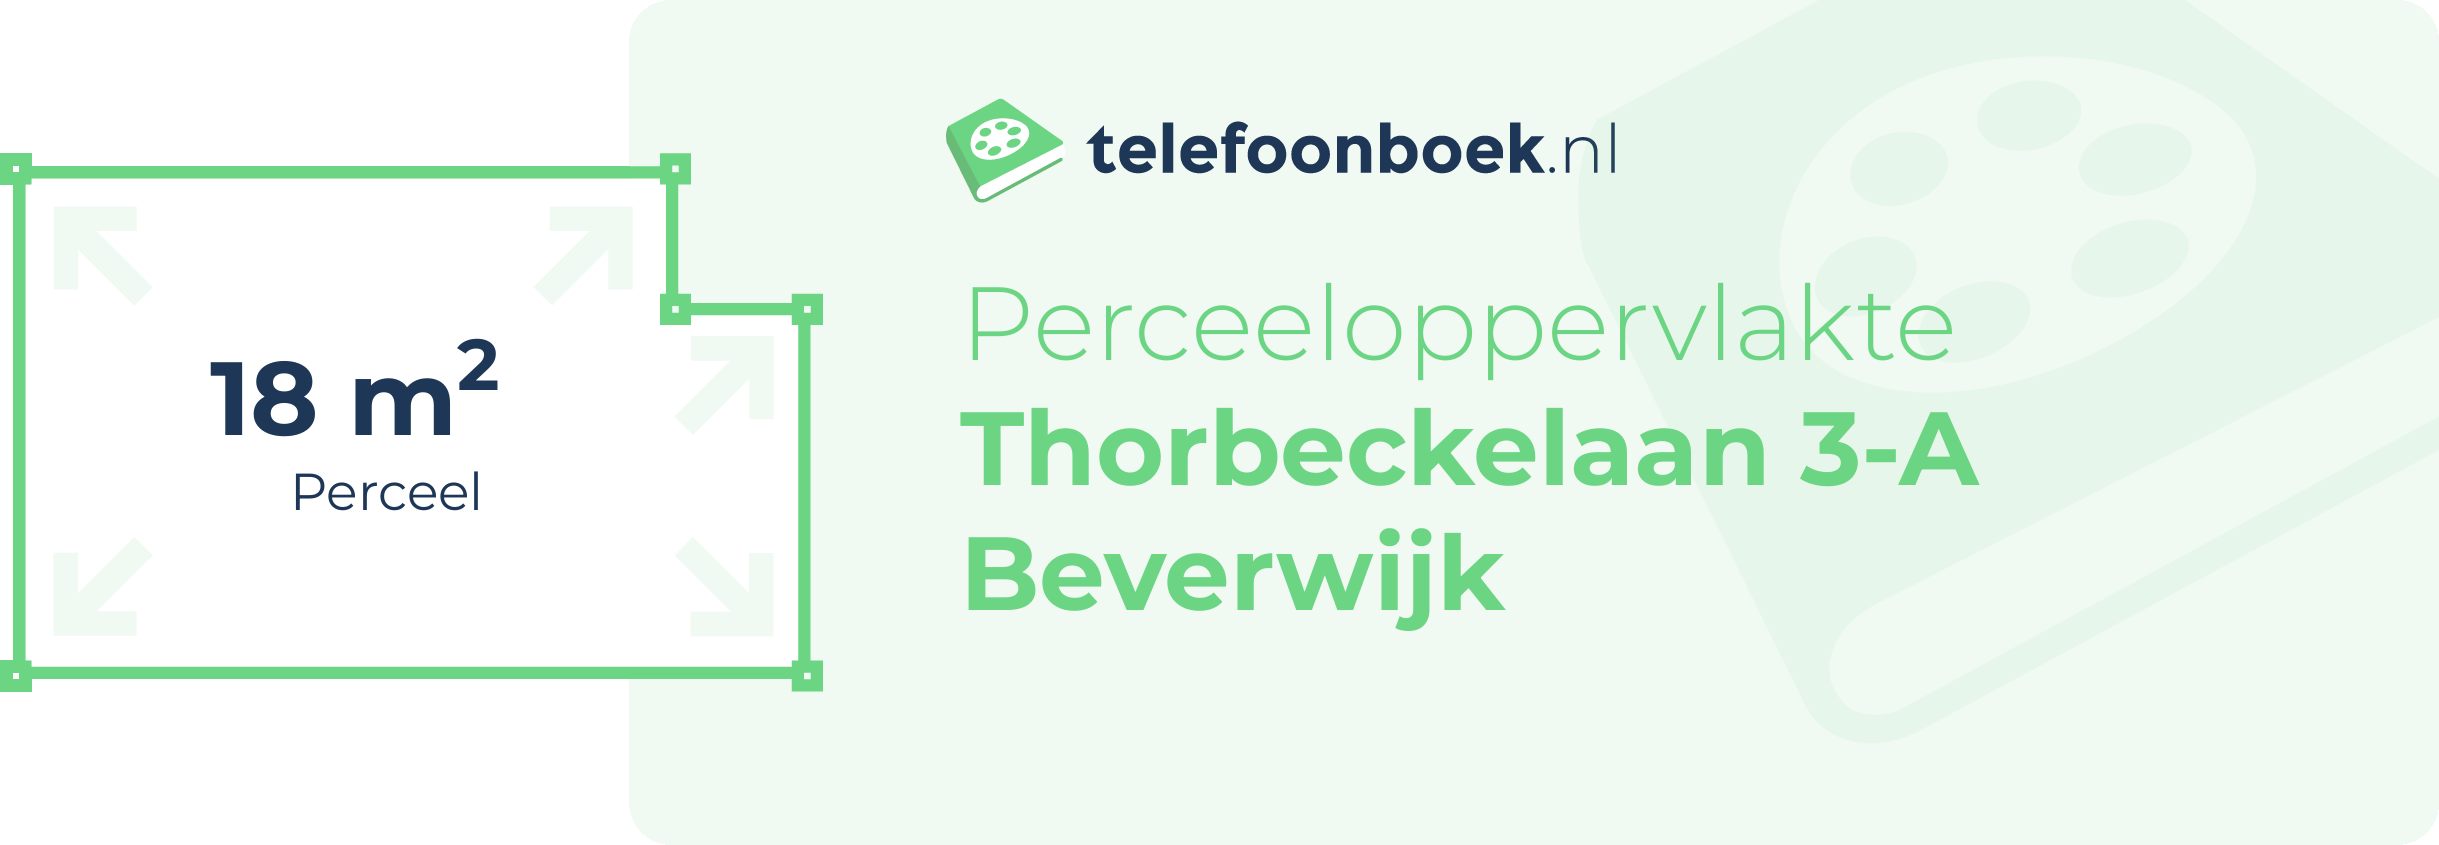 Perceeloppervlakte Thorbeckelaan 3-A Beverwijk